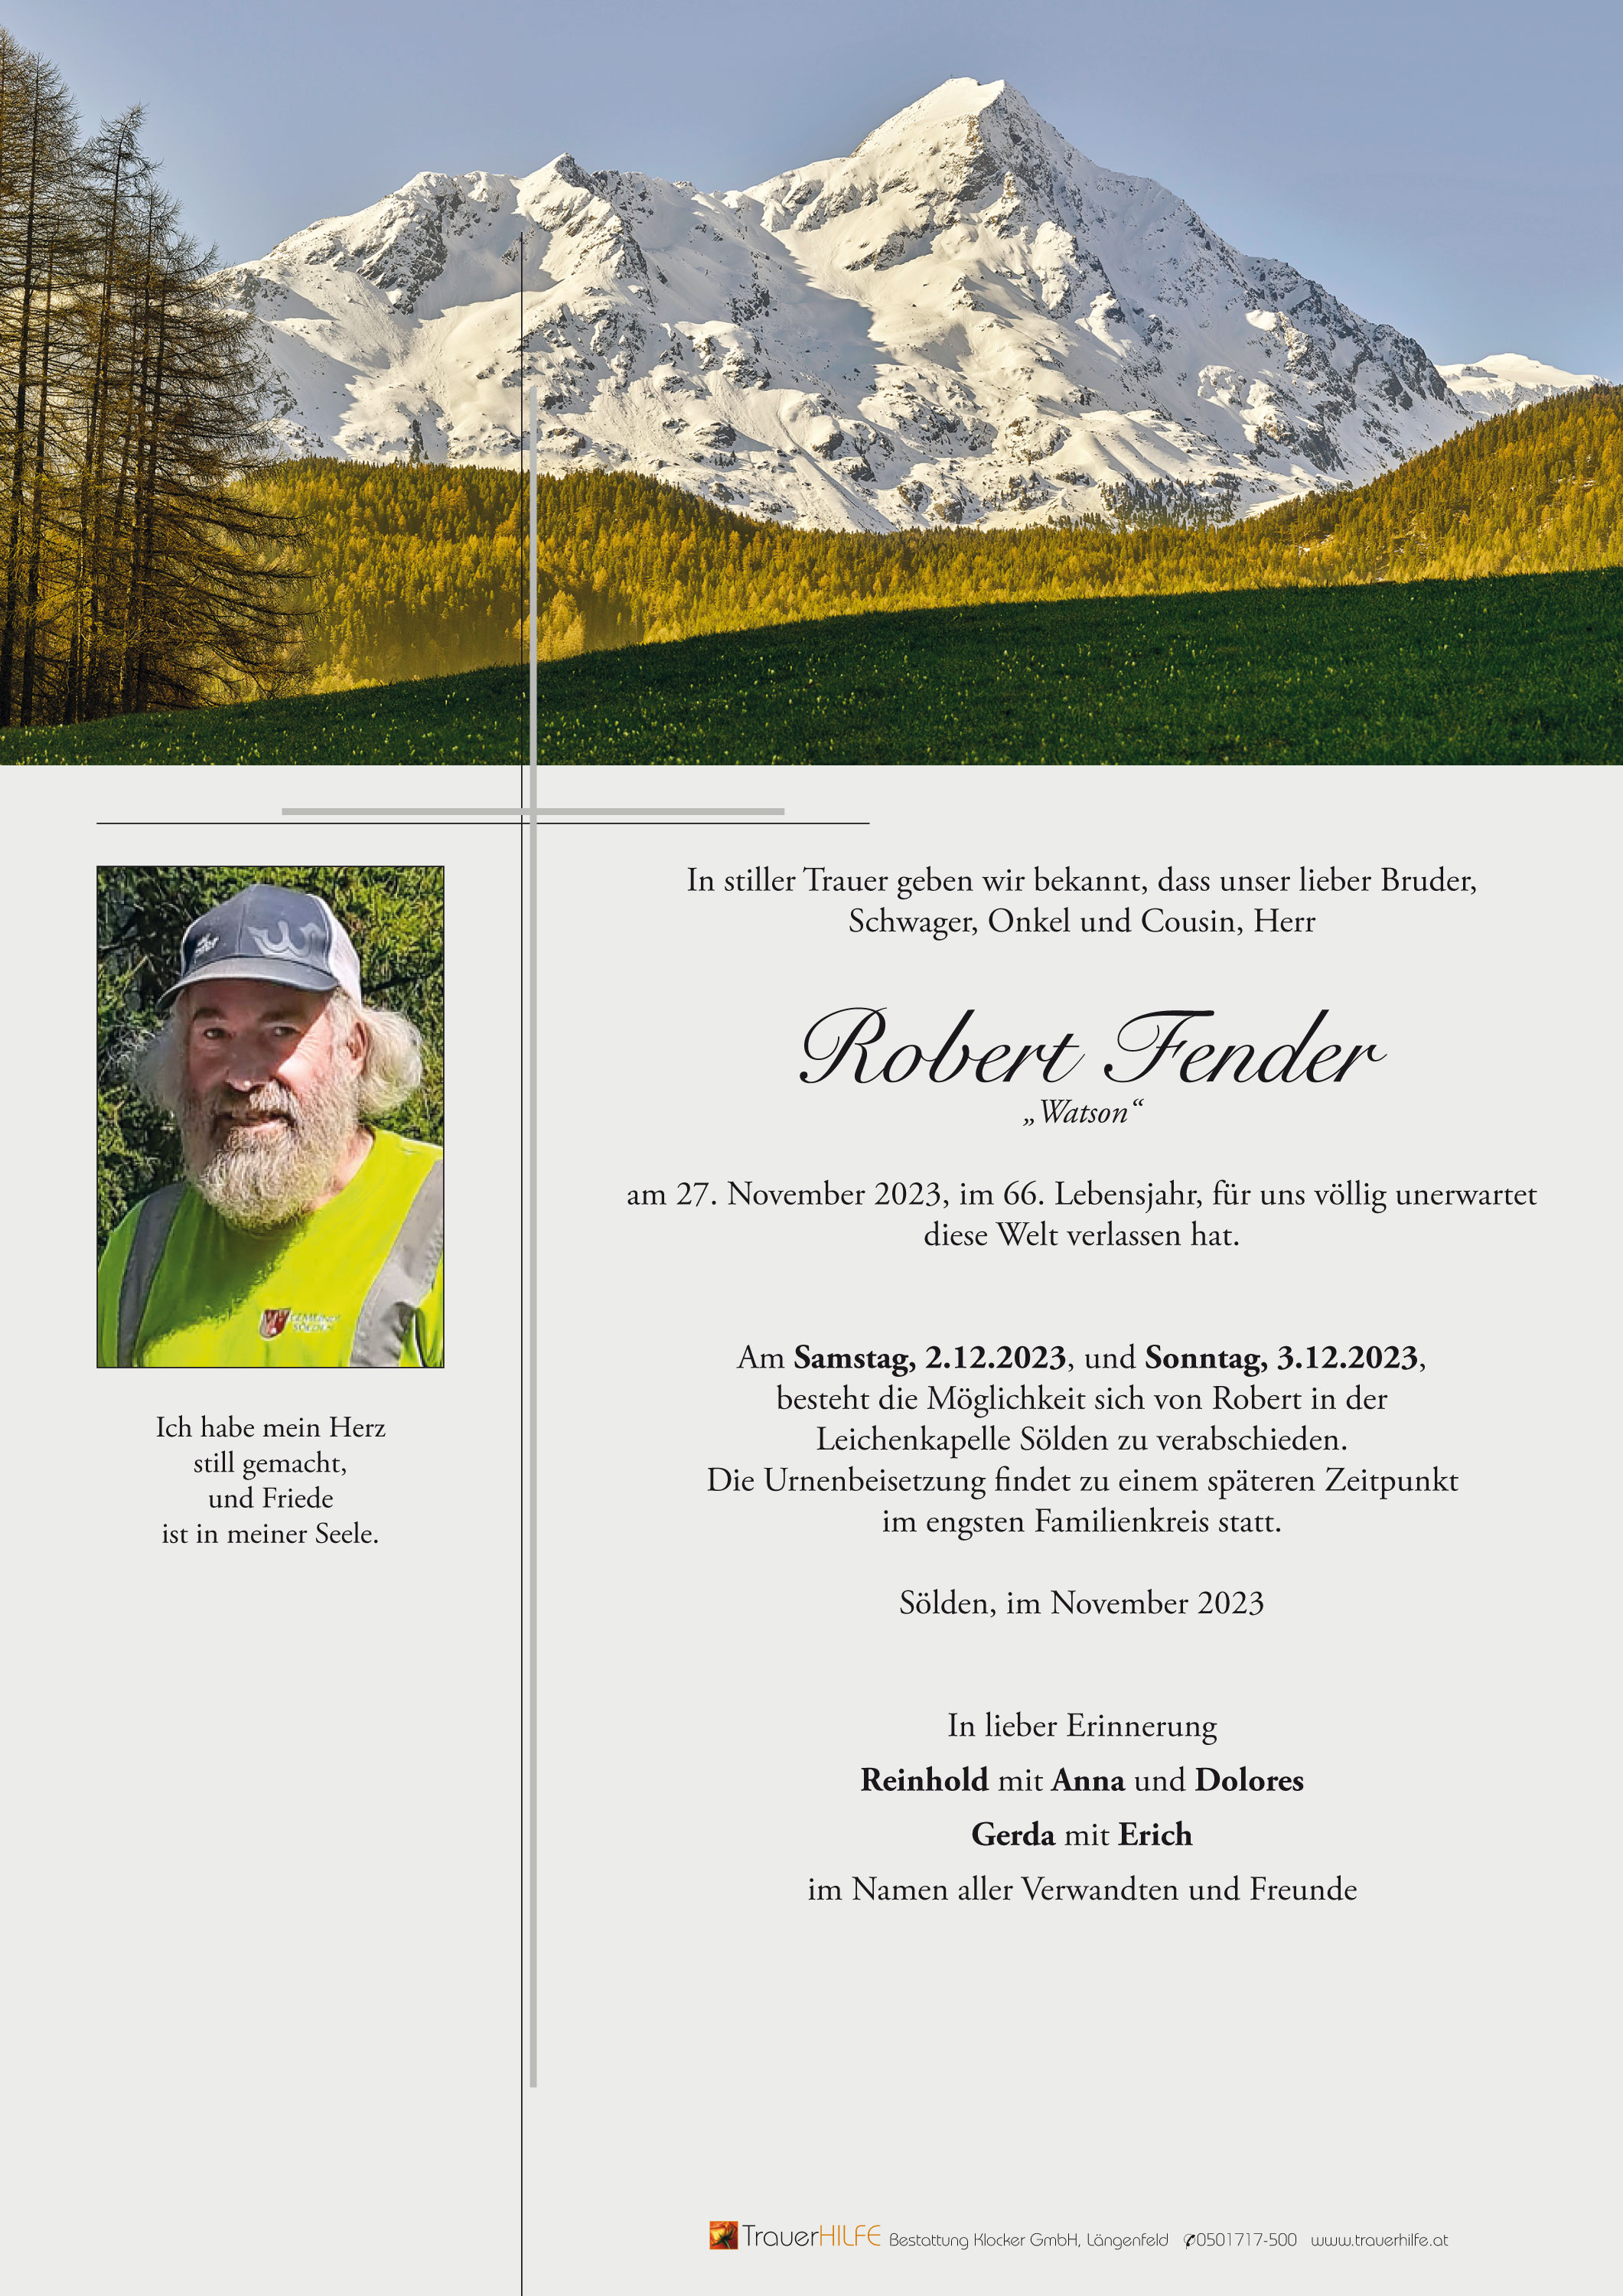 Robert Fender